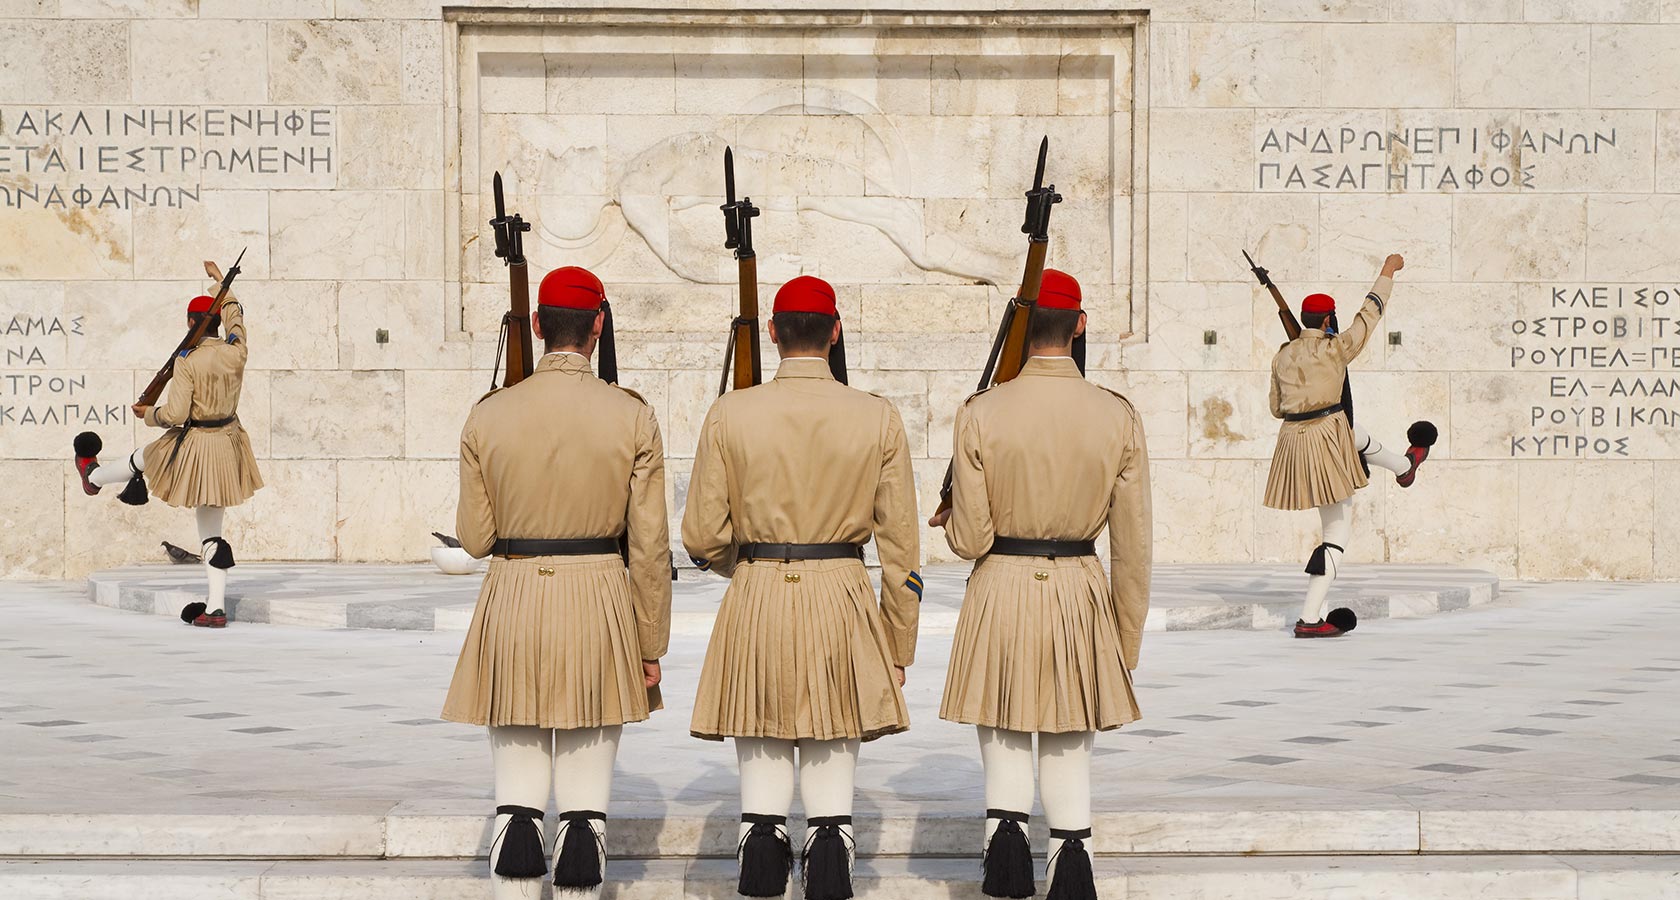 Changement de garde rituel à Syntagma Athènes Grèce - Parlement grec